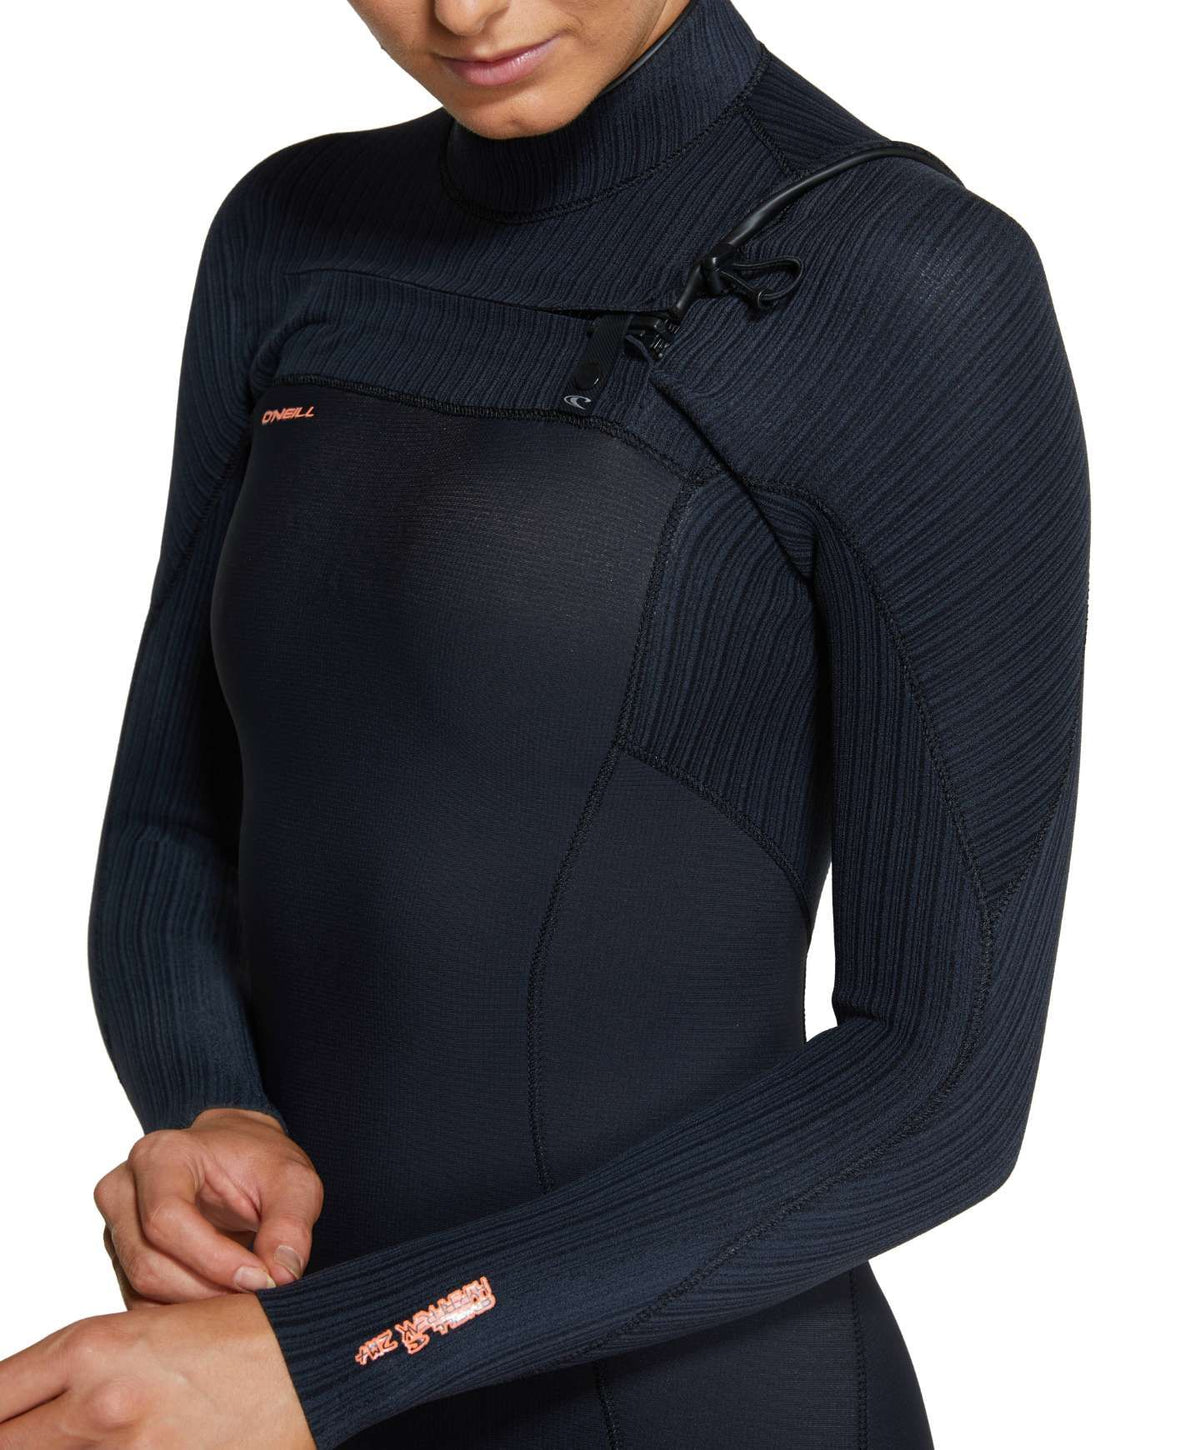 Women's Hyperfreak Long Sleeve Spring Suit 2mm Wetsuit - Black